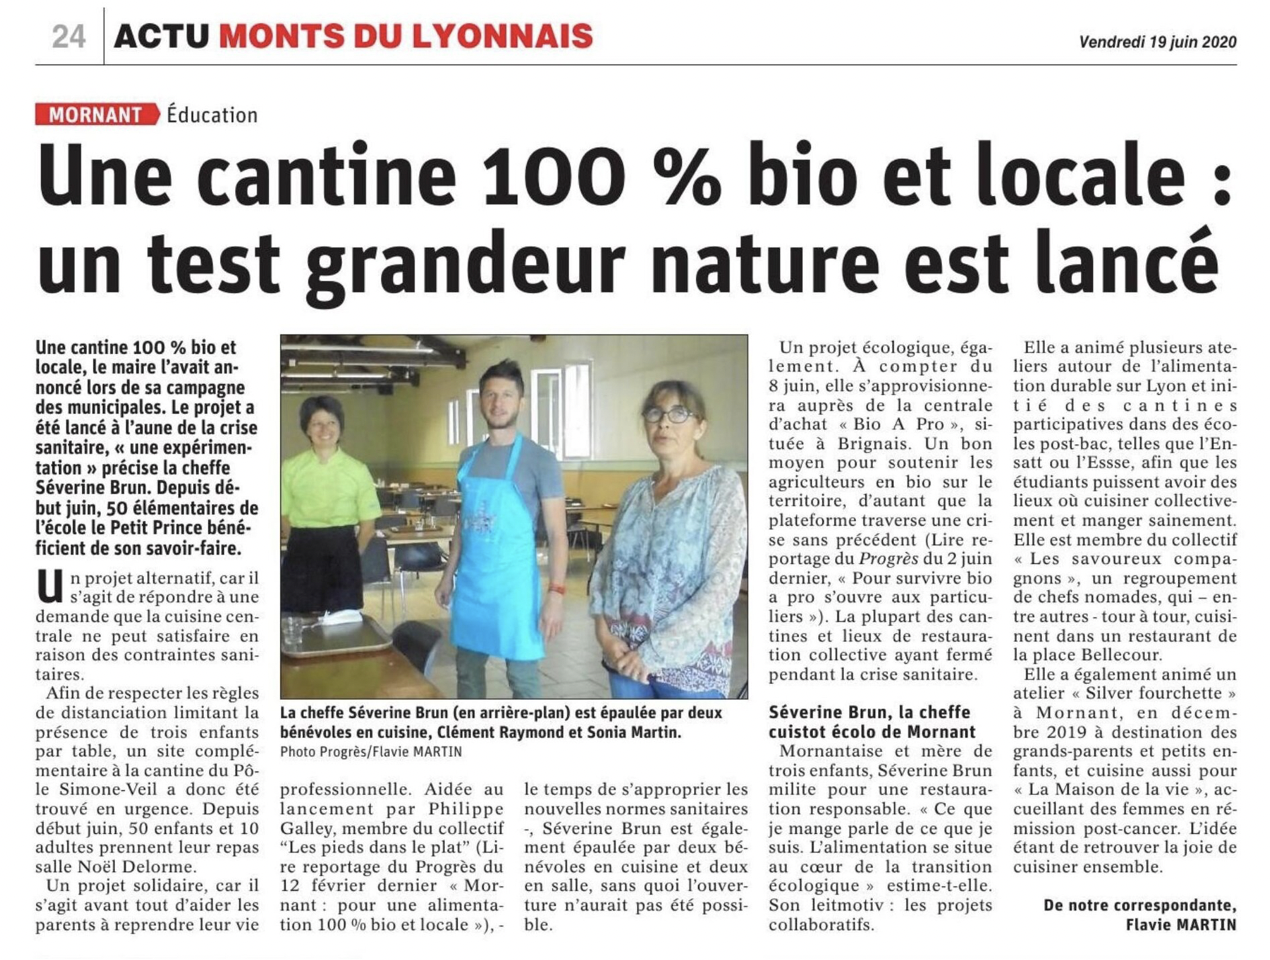 19/06/20 - Actu monts du lyonnais : une cantine 100% bio et locale, un test grandeur nature est lancé